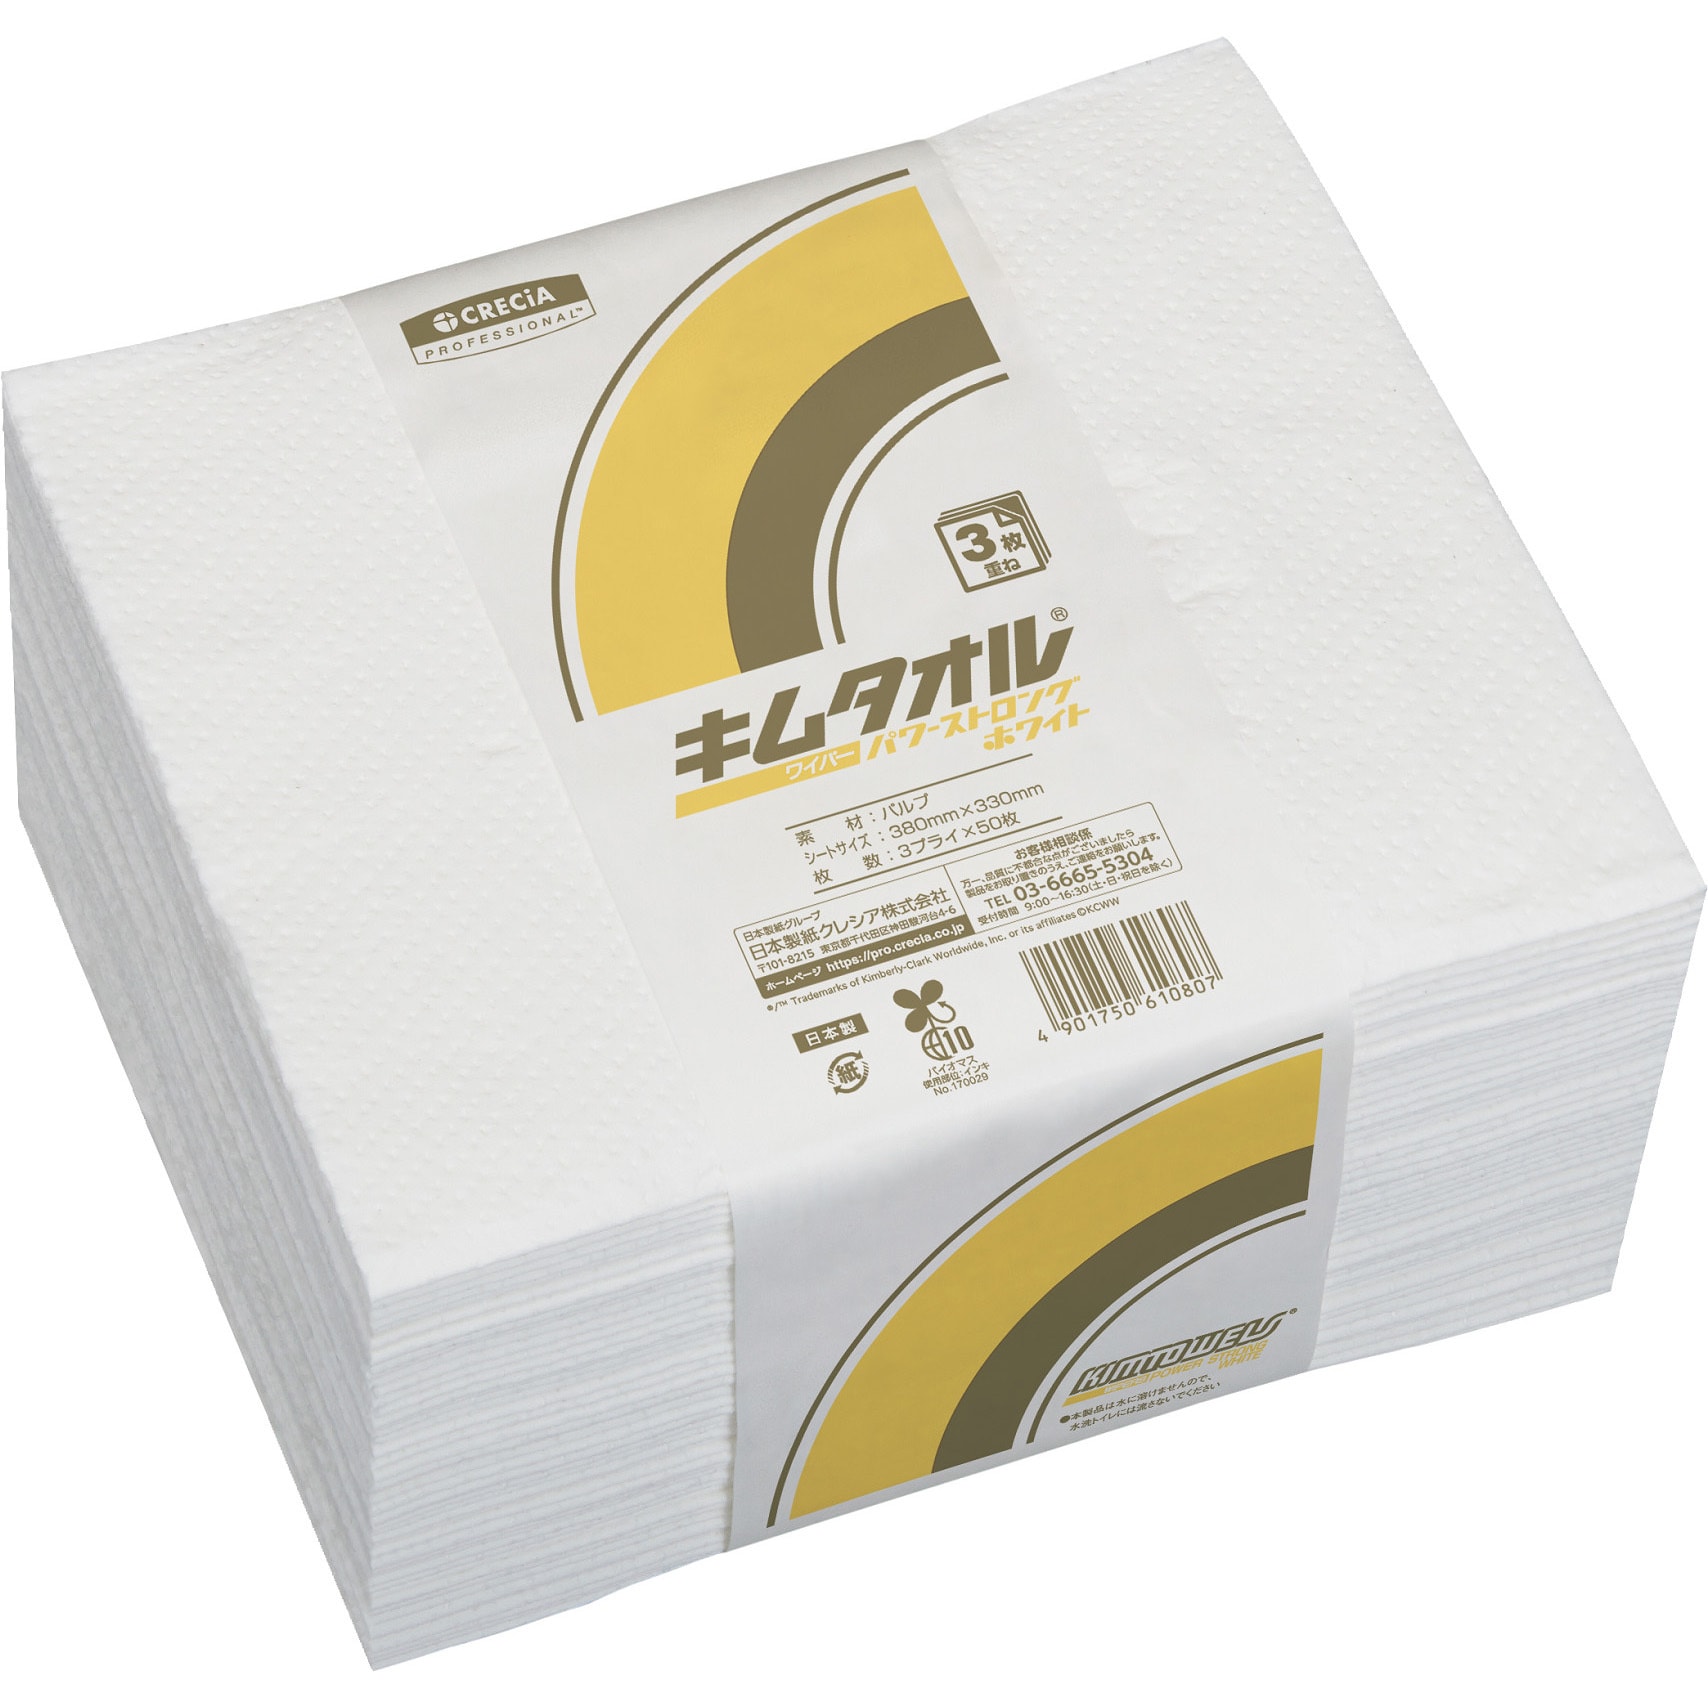 ペーパータオル 日本製紙クレシア キムワイプハンドタオル 200組/パック 1ケース(25パック)